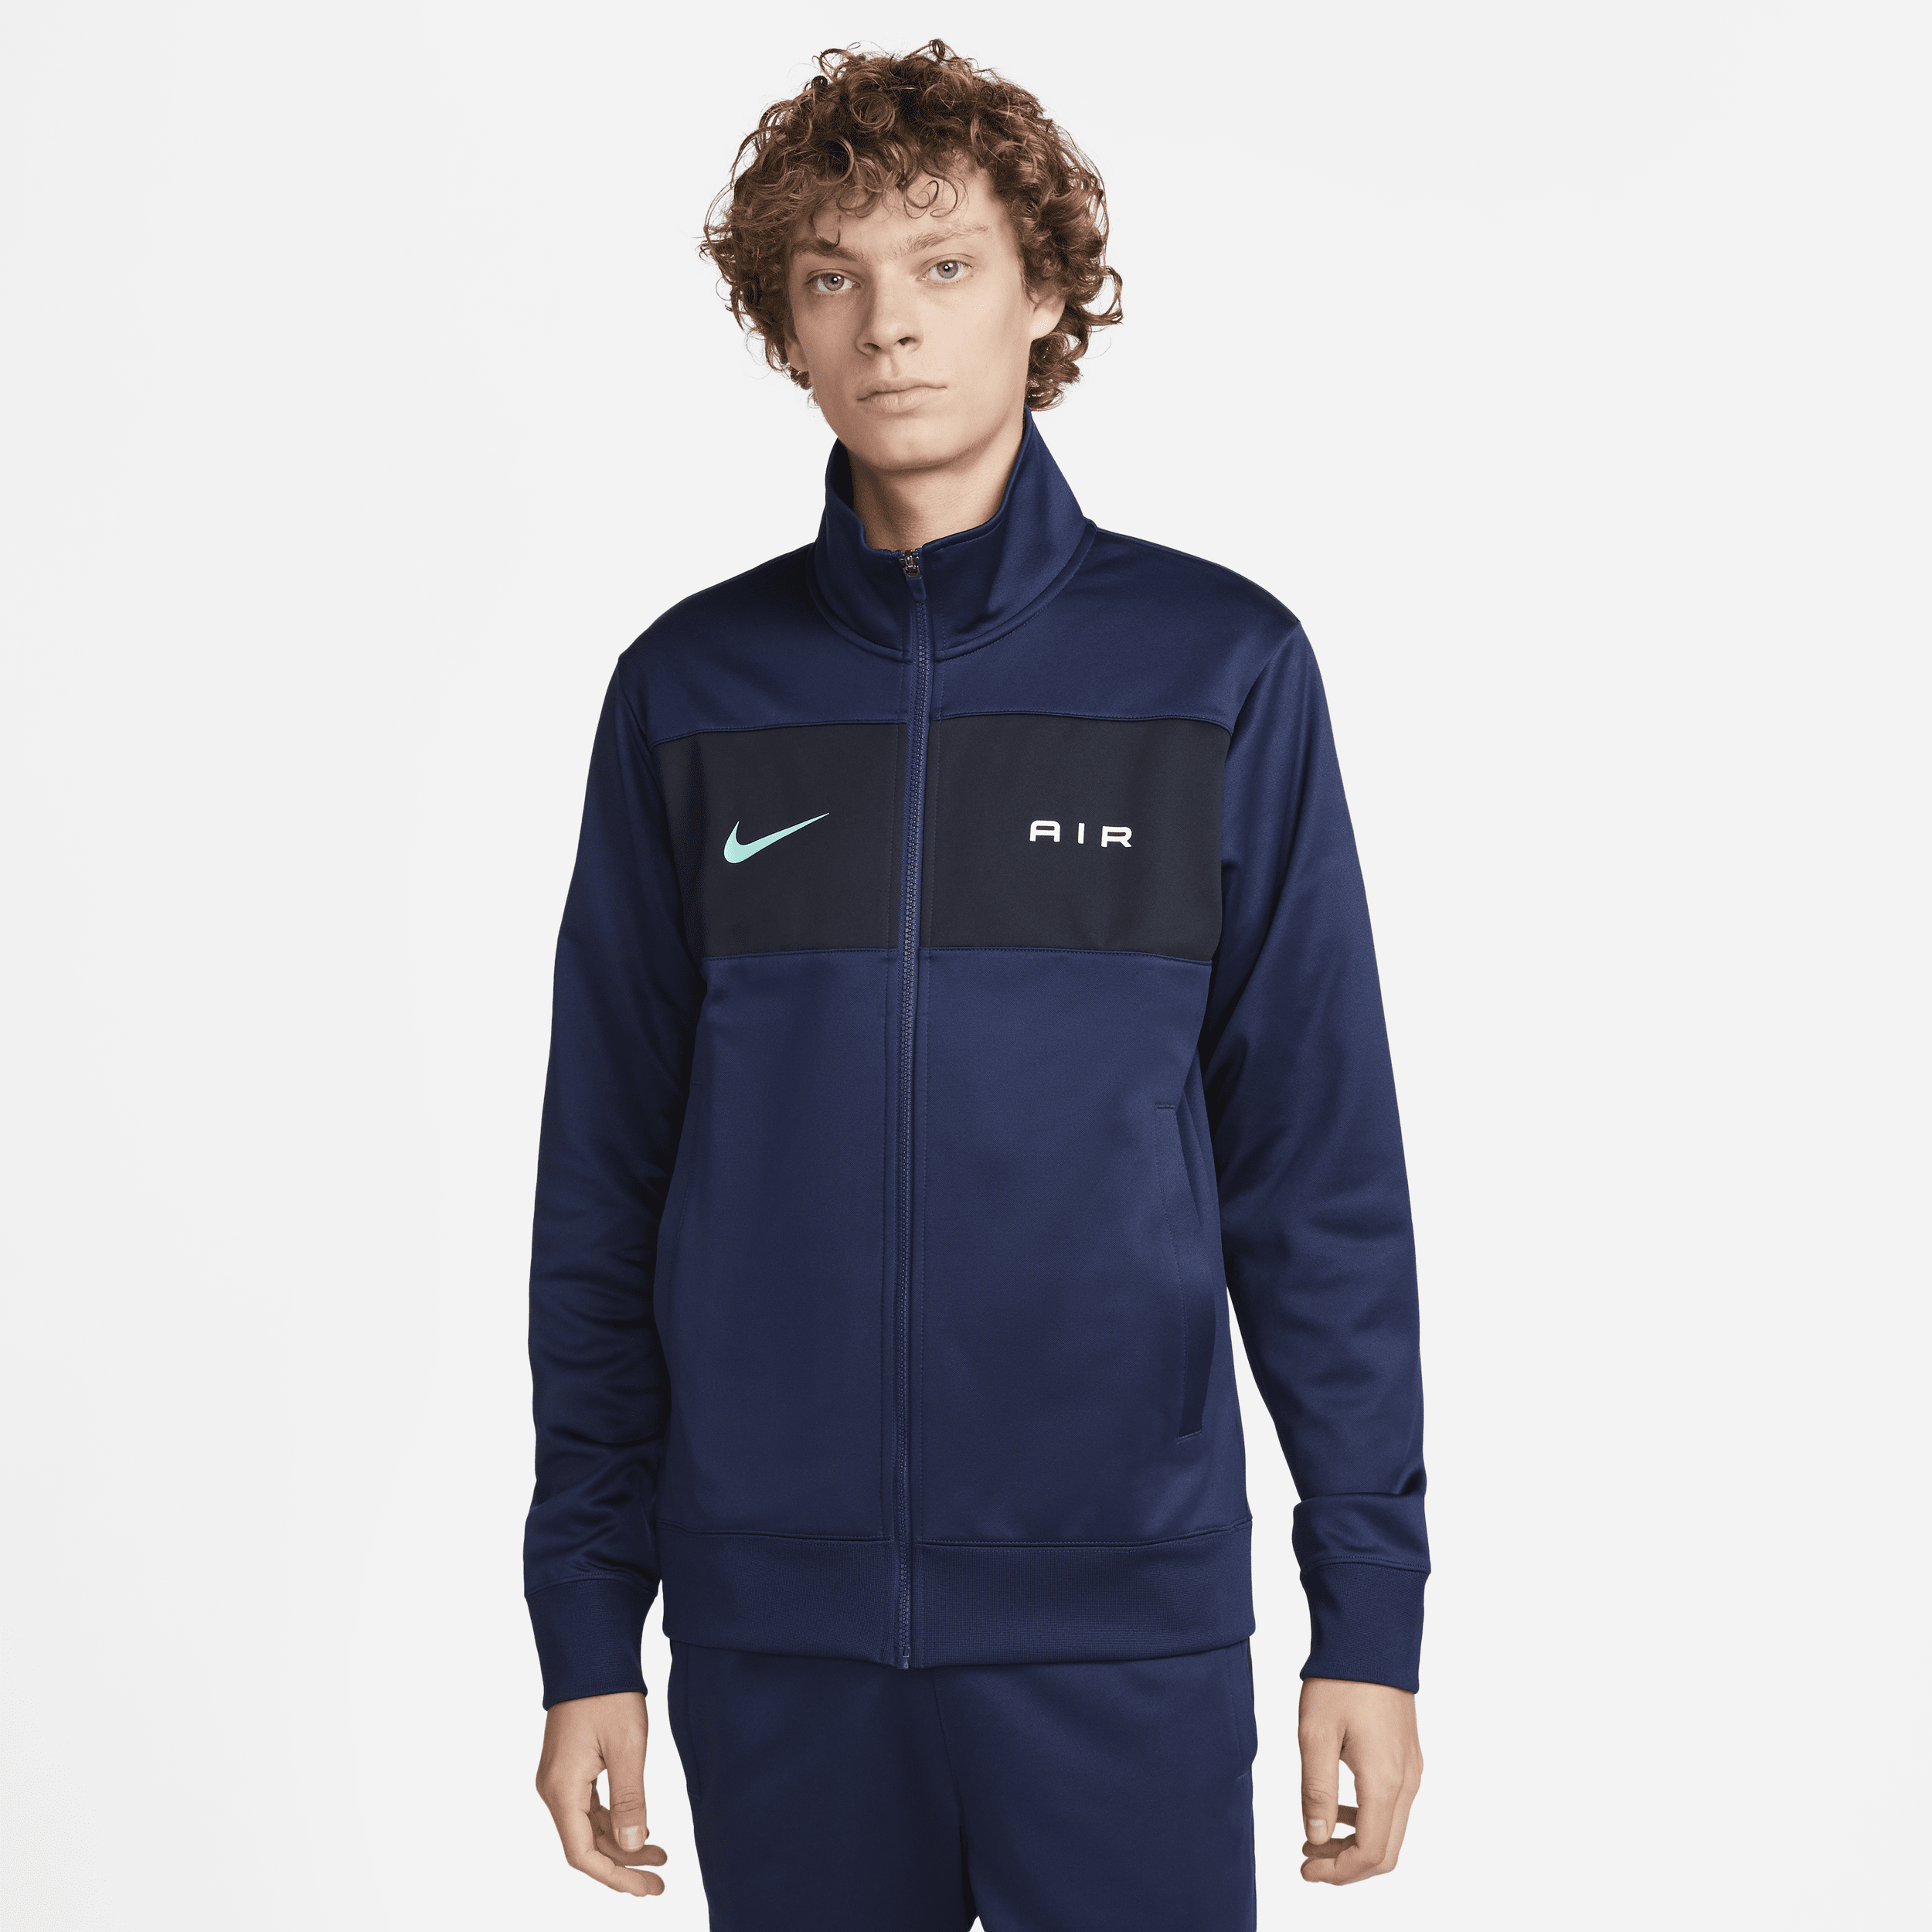 Nike Air Chaqueta deportiva - Hombre - Azul